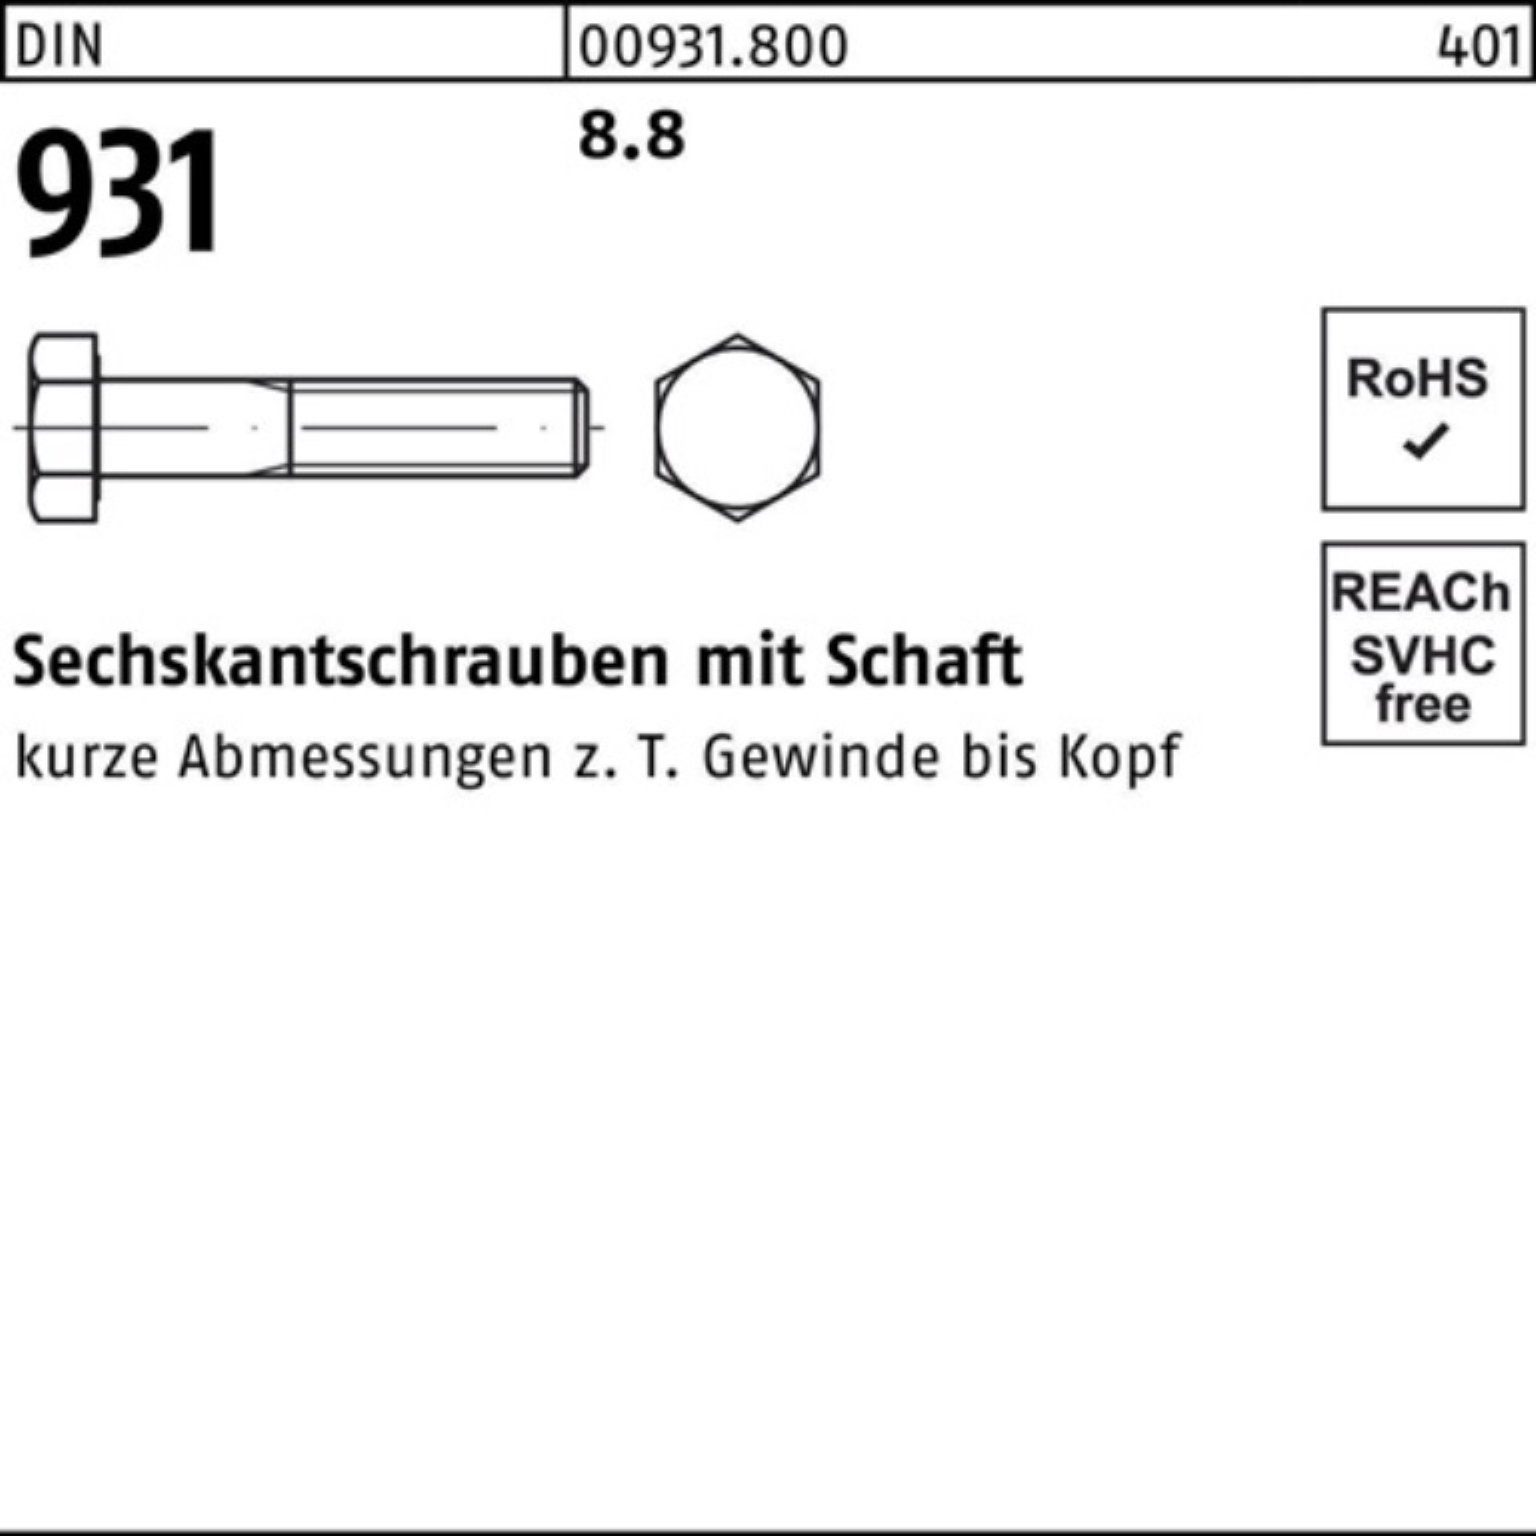 Schaft M45x Pack DIN 1 Sechskantschraube Sechskantschraube Reyher 180 100er 931 DIN Stück 8.8